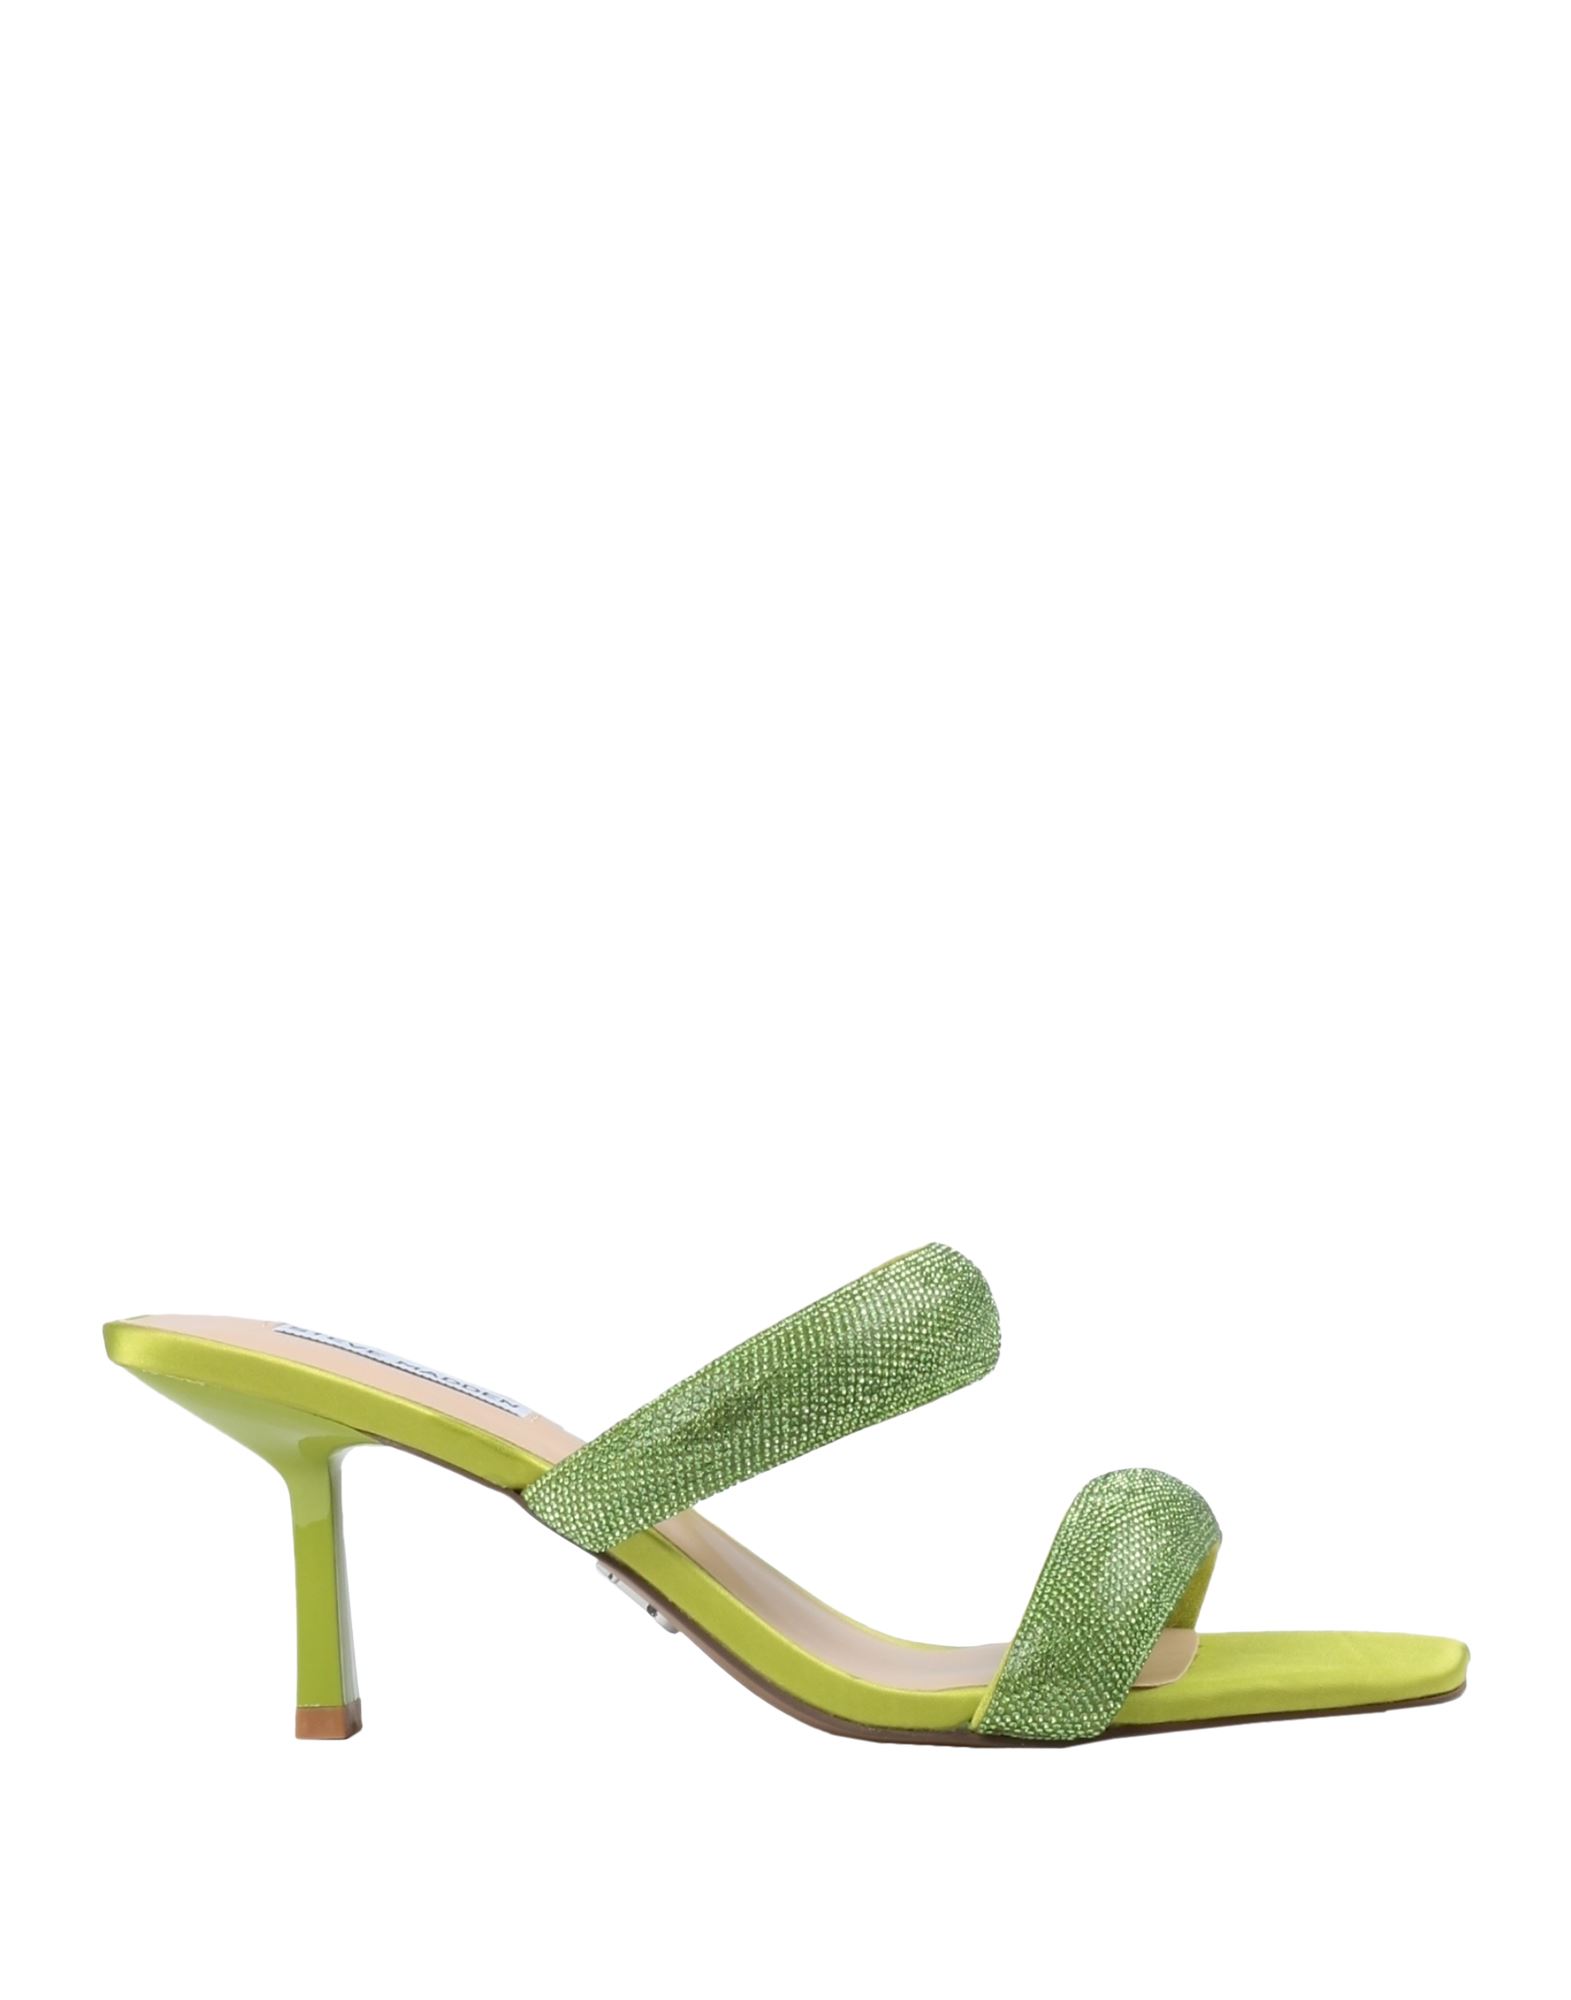 Steve Madden Sandals In Green | ModeSens